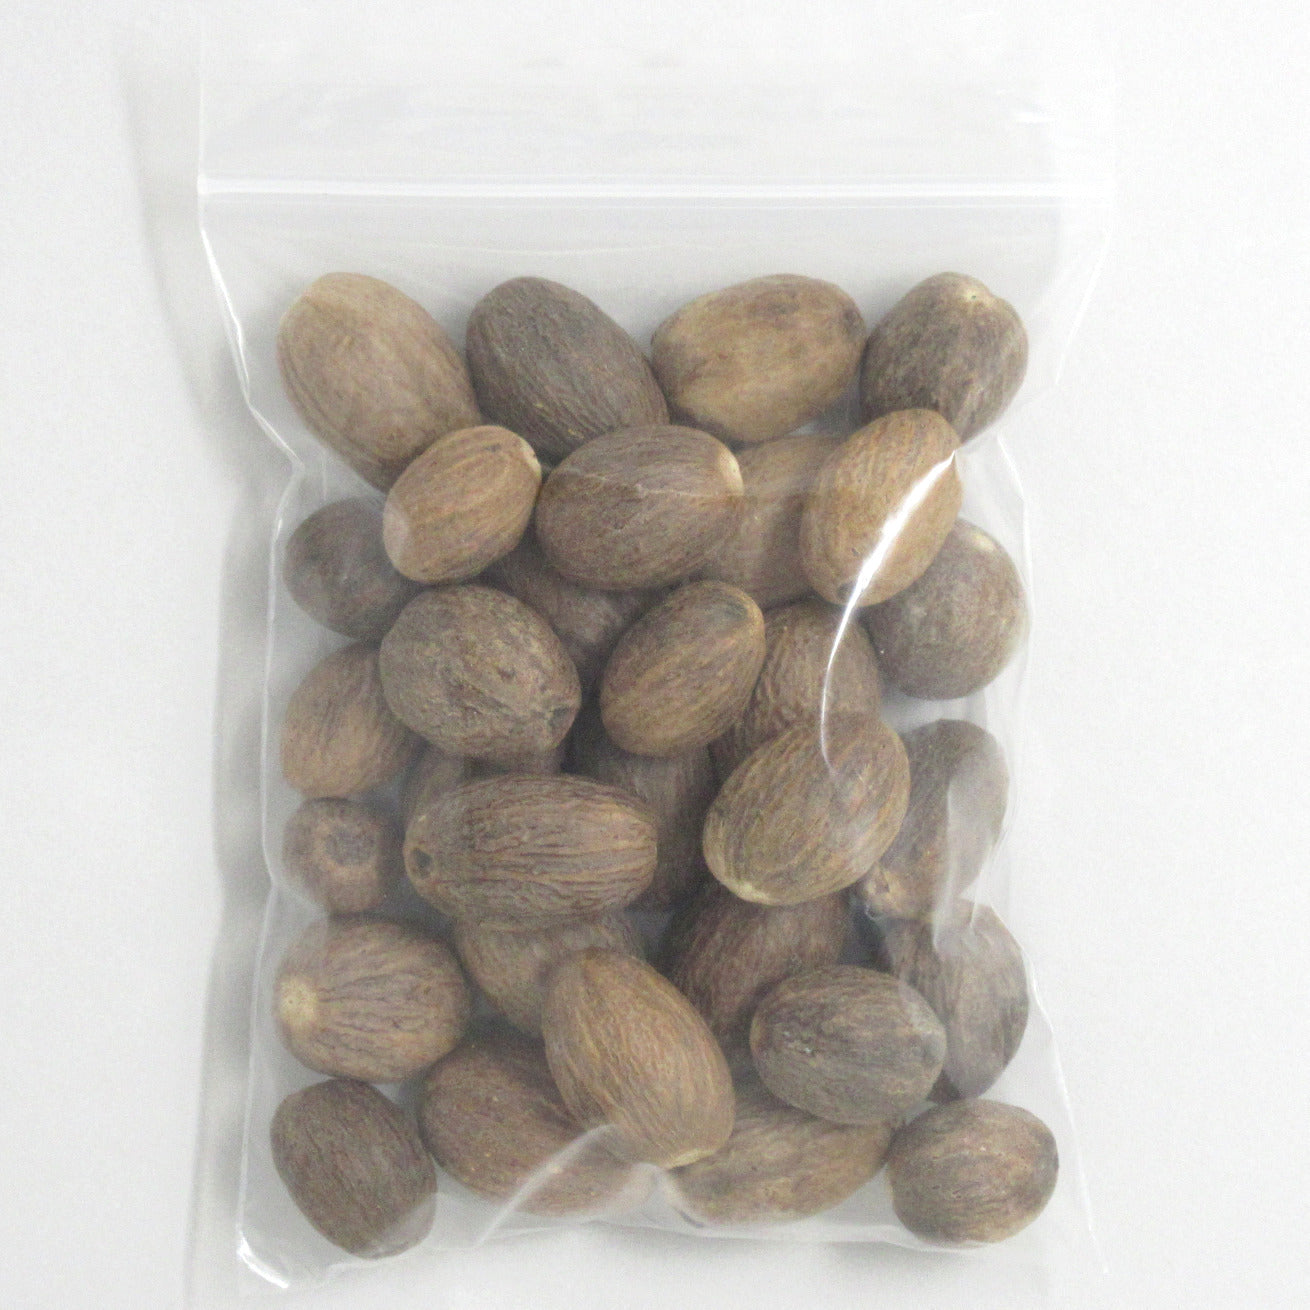 Flour Barrel product image - Nutmeg Whole